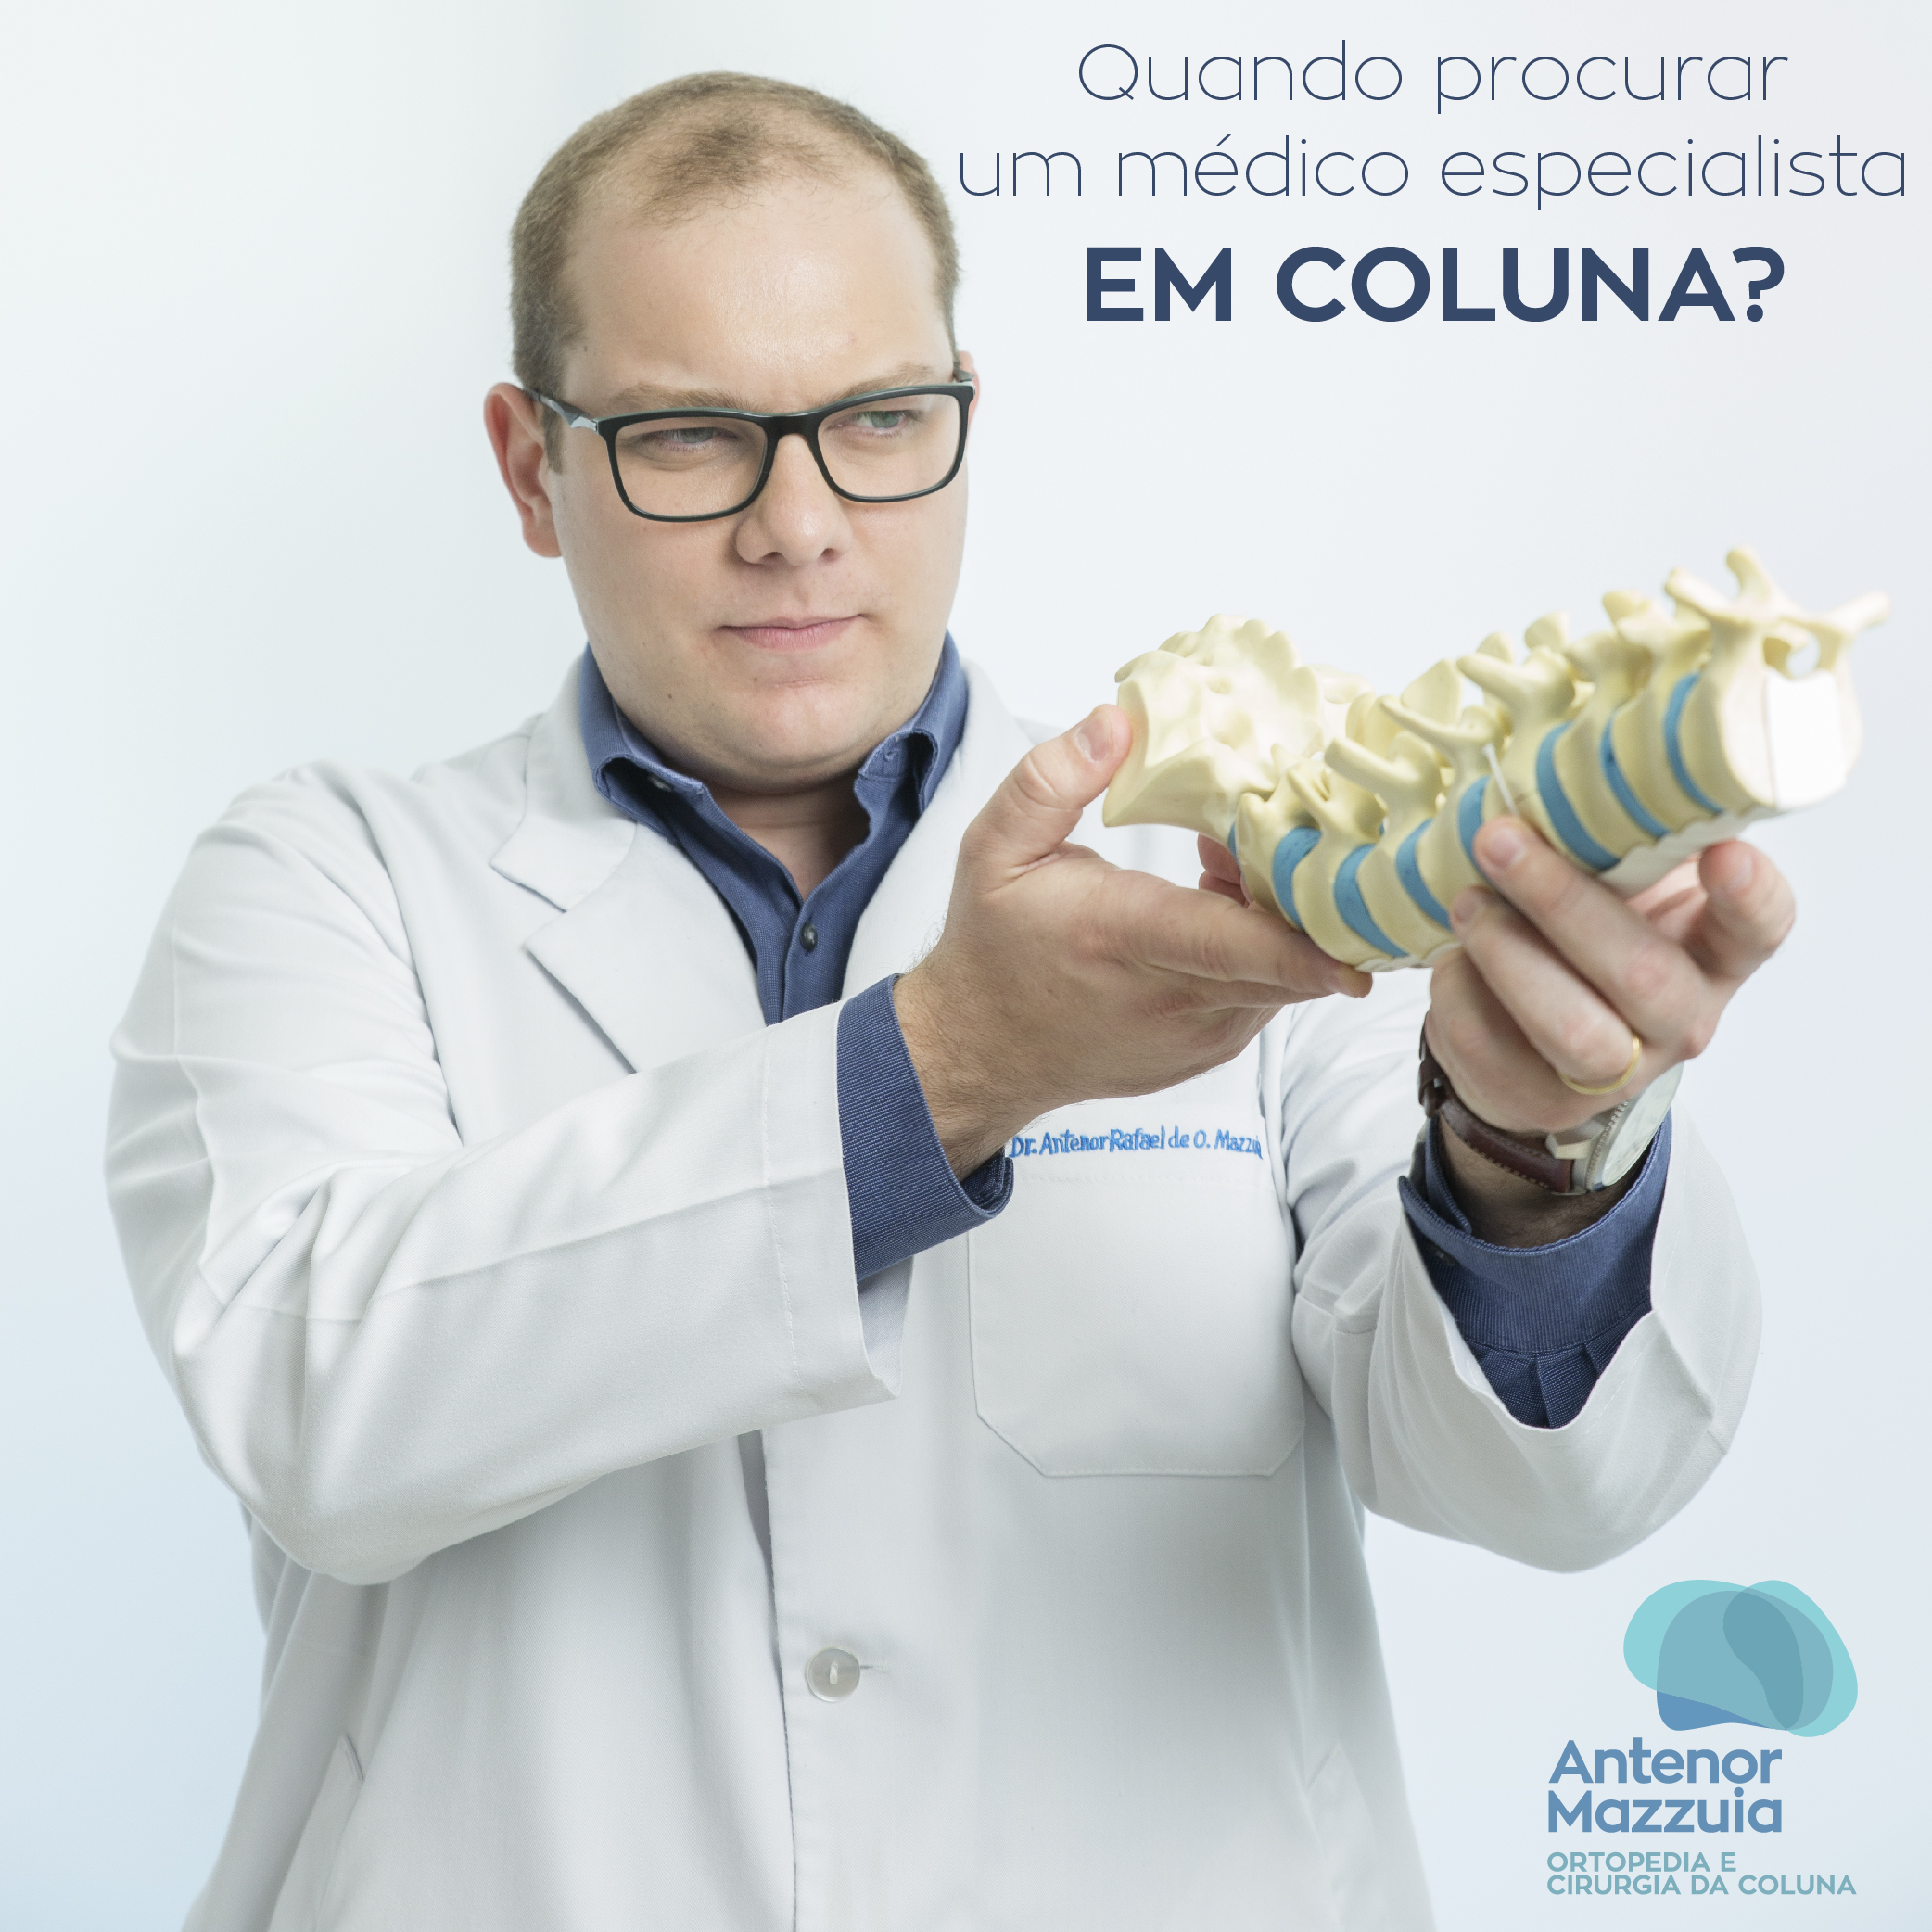 Dr. Antenor MazzuiaAntenor Mazzuia Ortopedia e Cirurgia da Coluna